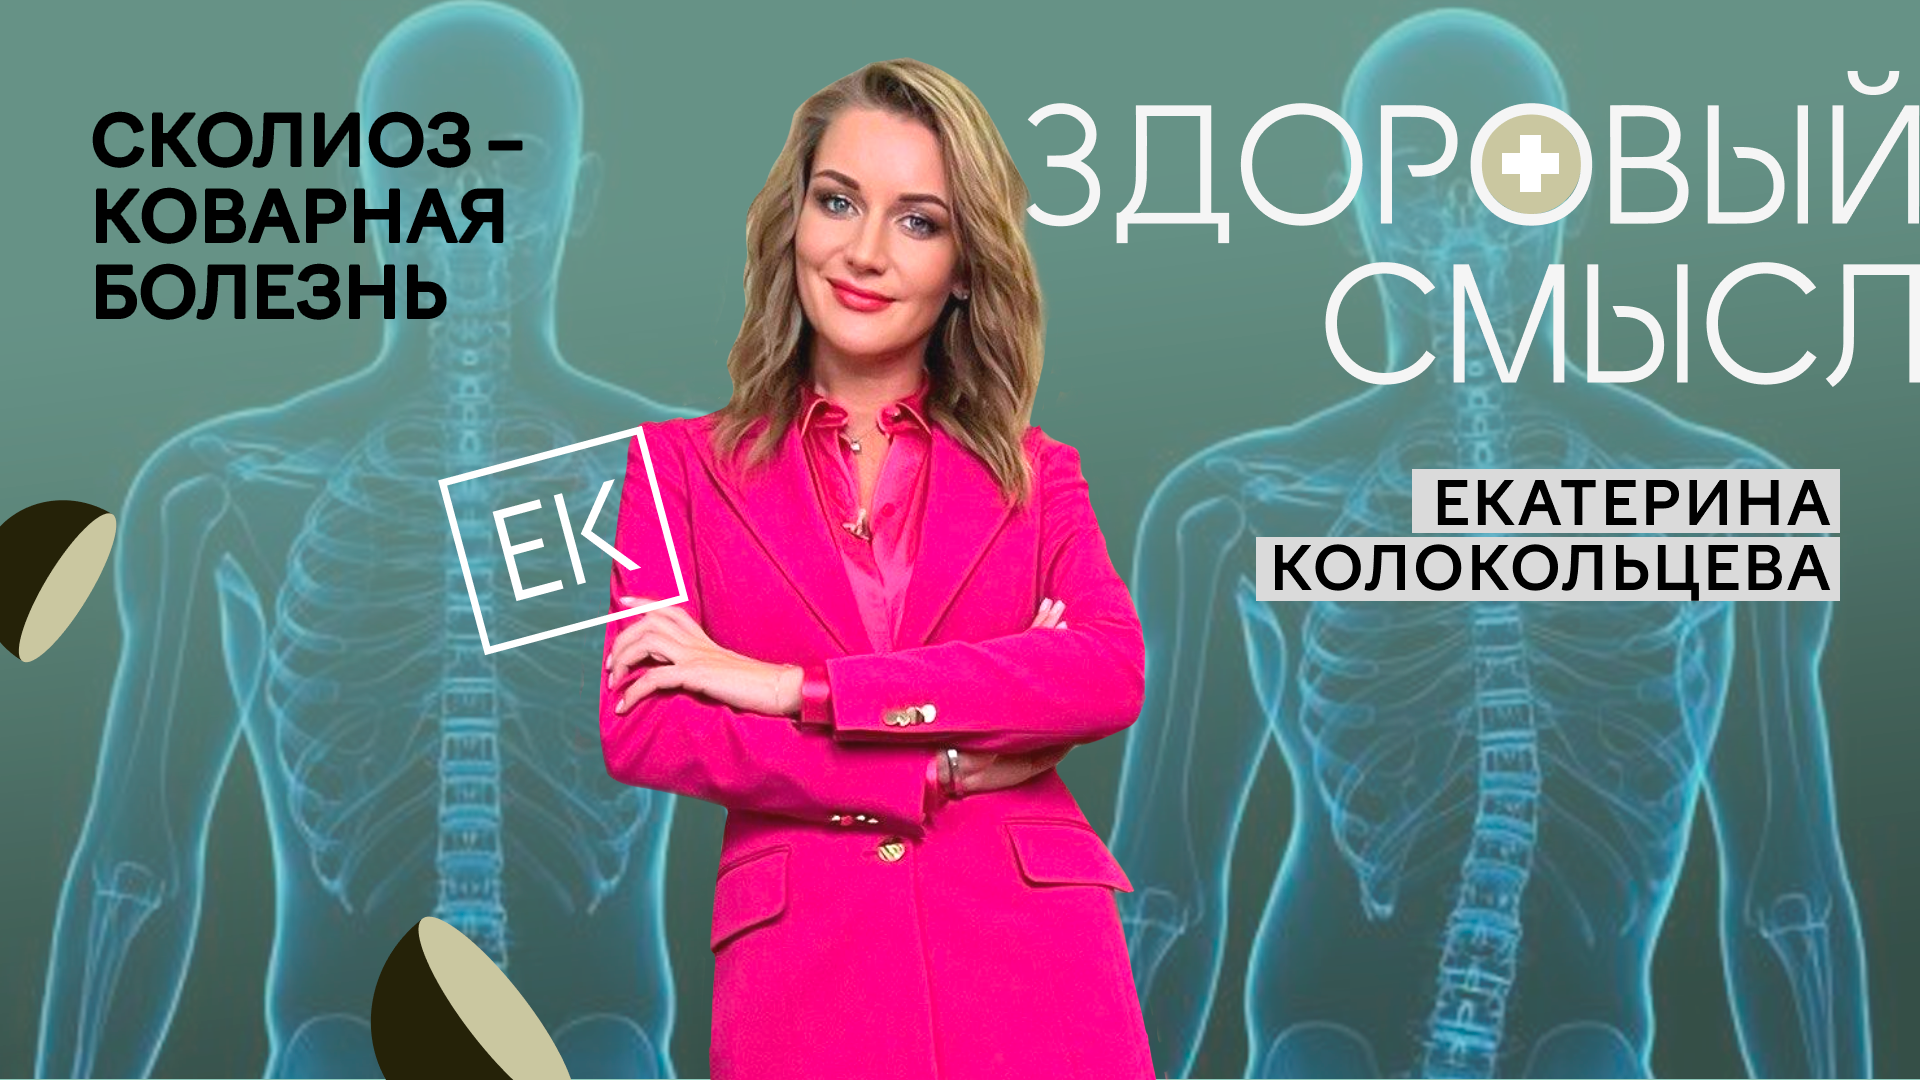 Сколиоз: причины, диагностика и лечение / Екатерина Колокольцева